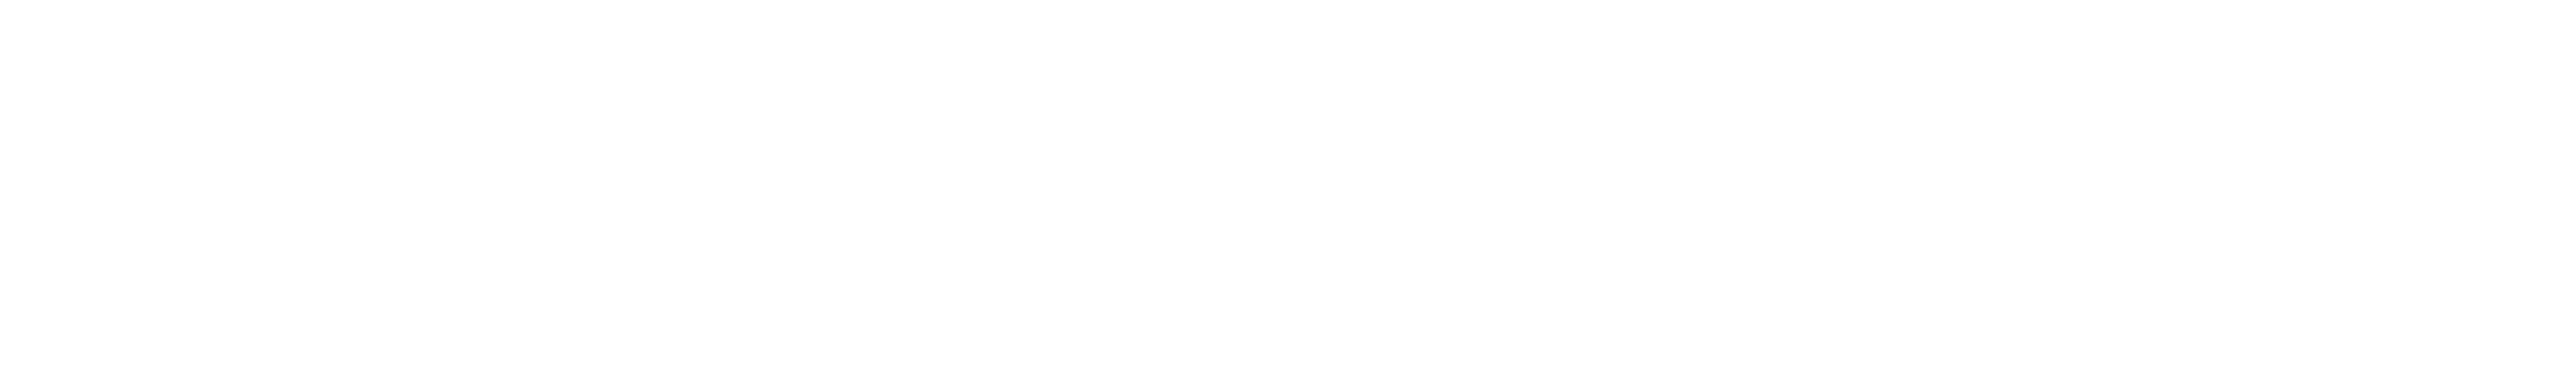 Black and White University of Washington Logo - HCDE Logo Files | Human Centered Design & Engineering